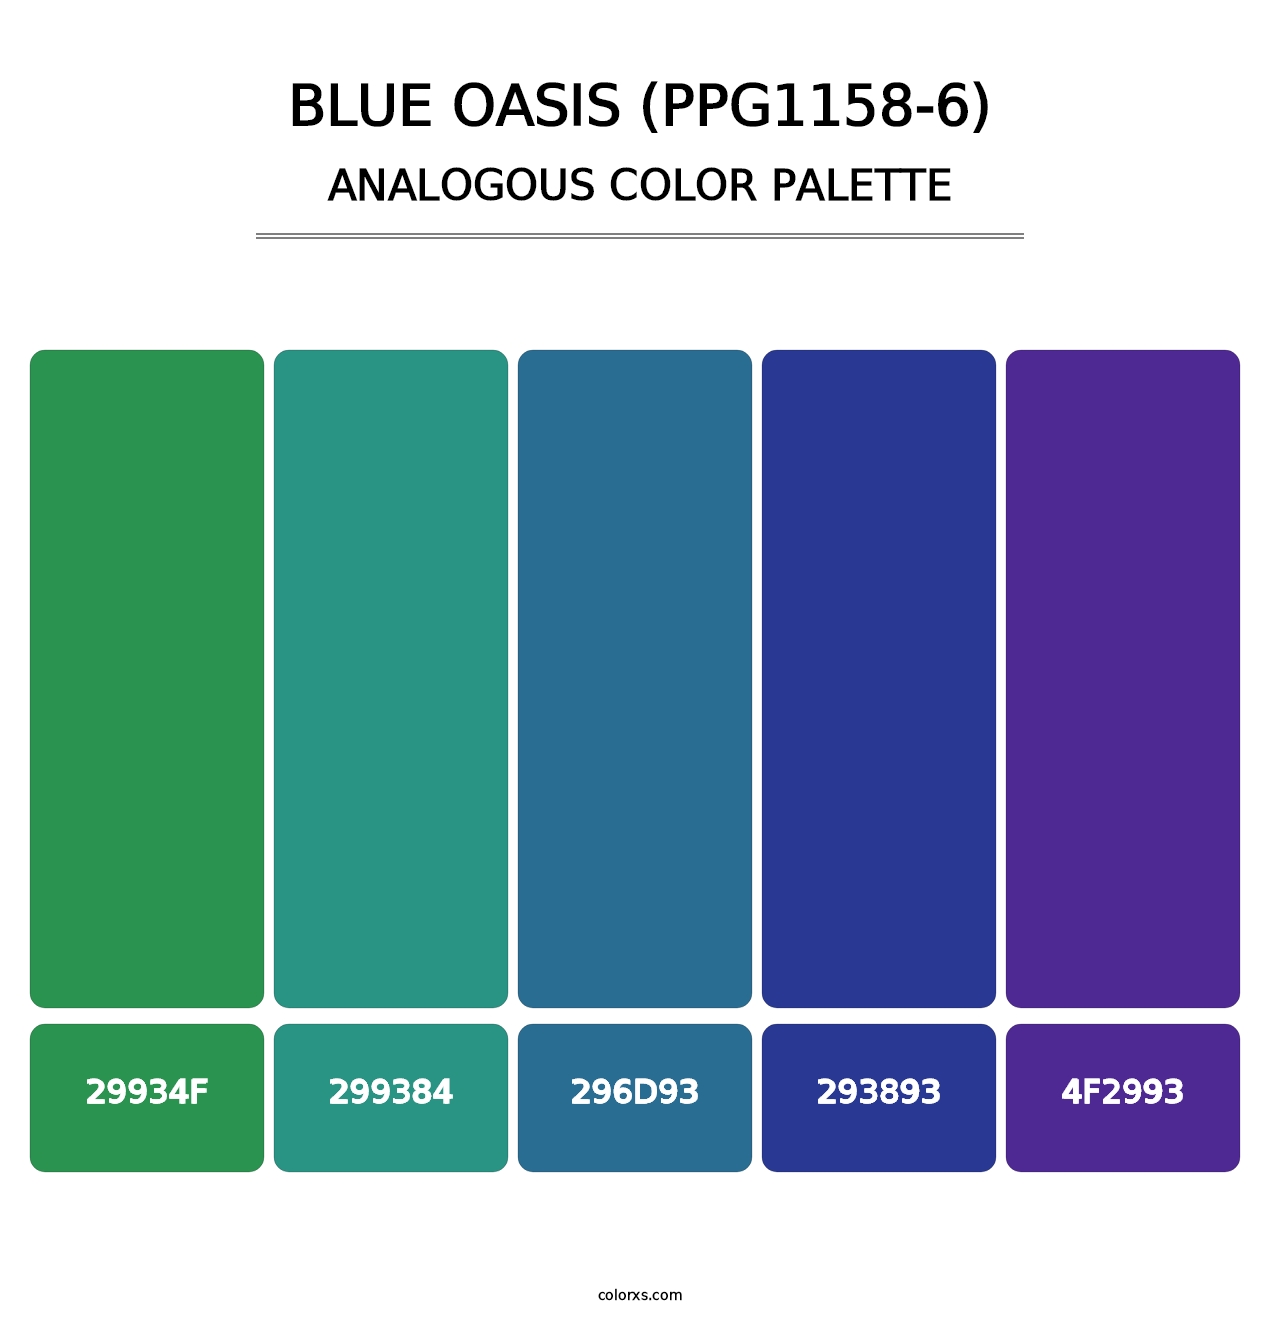 Blue Oasis (PPG1158-6) - Analogous Color Palette